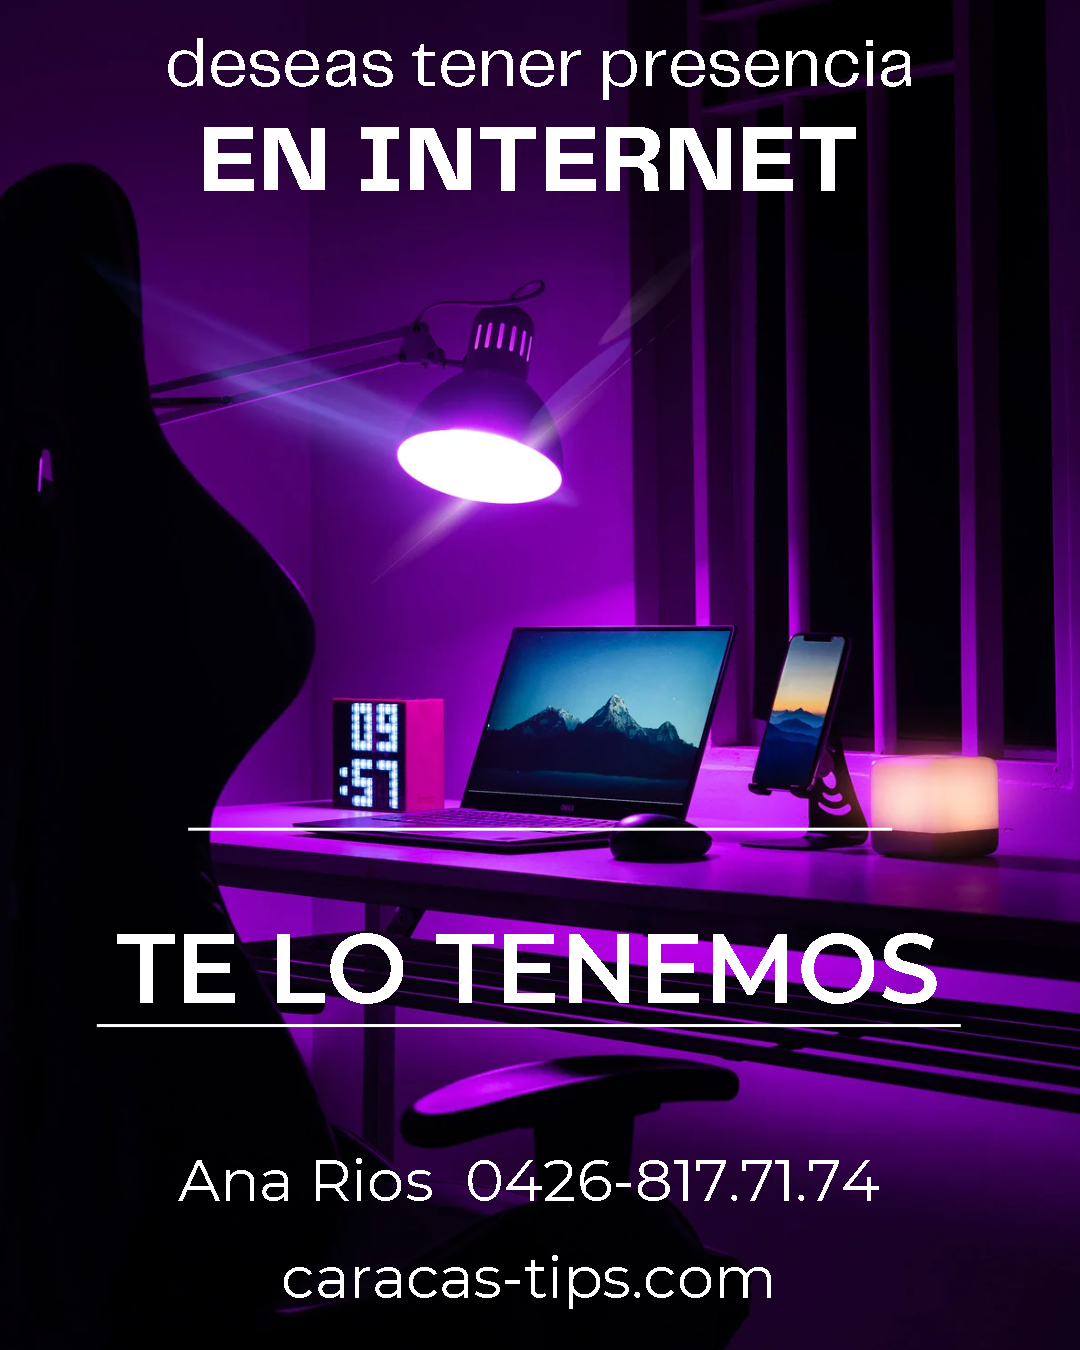 Imagina tu negocio en internet, en Caracas. caracas-tips.com te da la posibilidad estar presente.